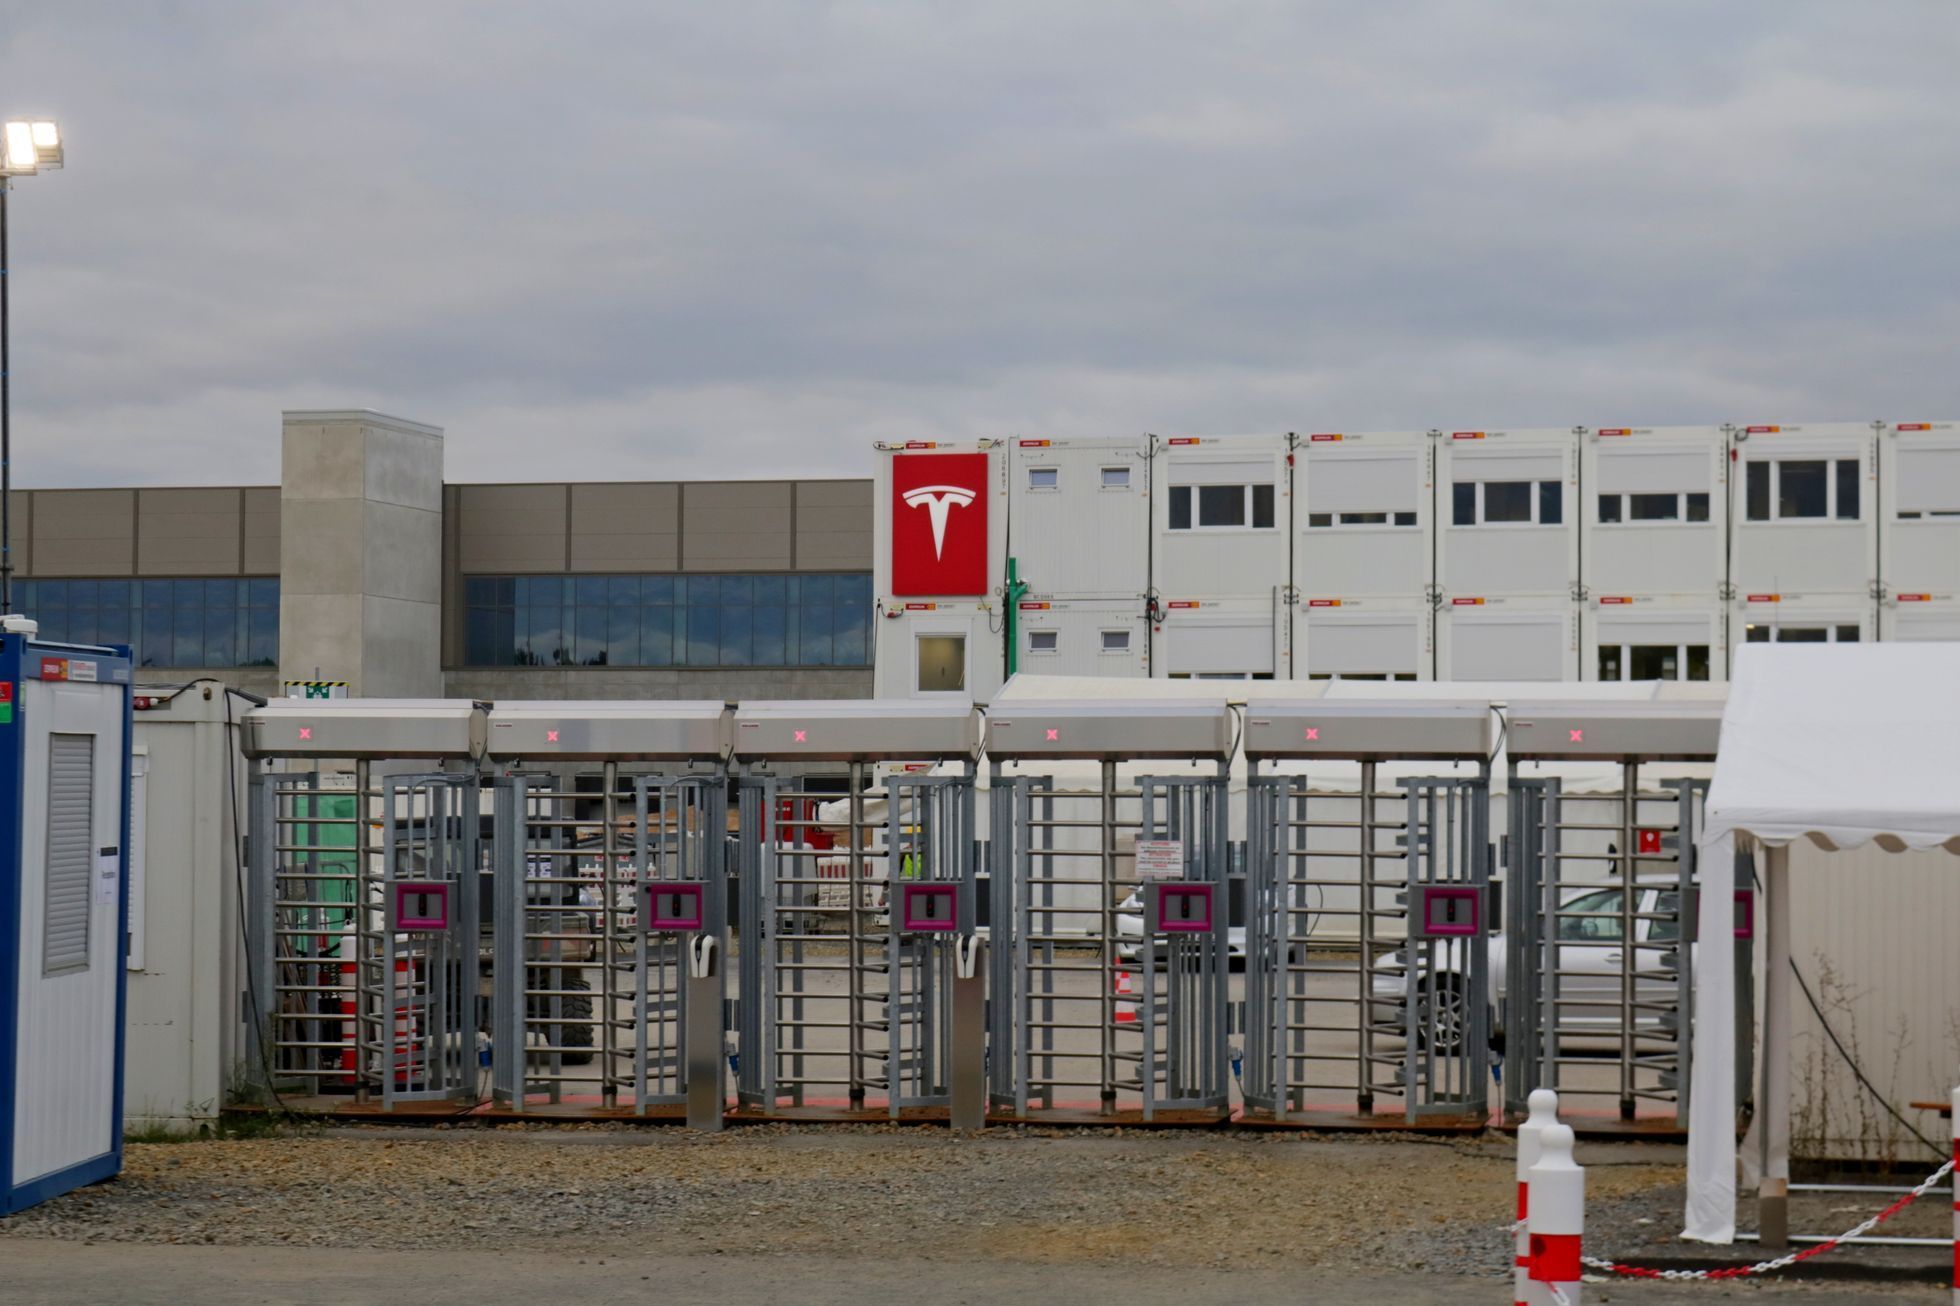 Tesla výstavba továrny Gigafactory u Berlína září 2021